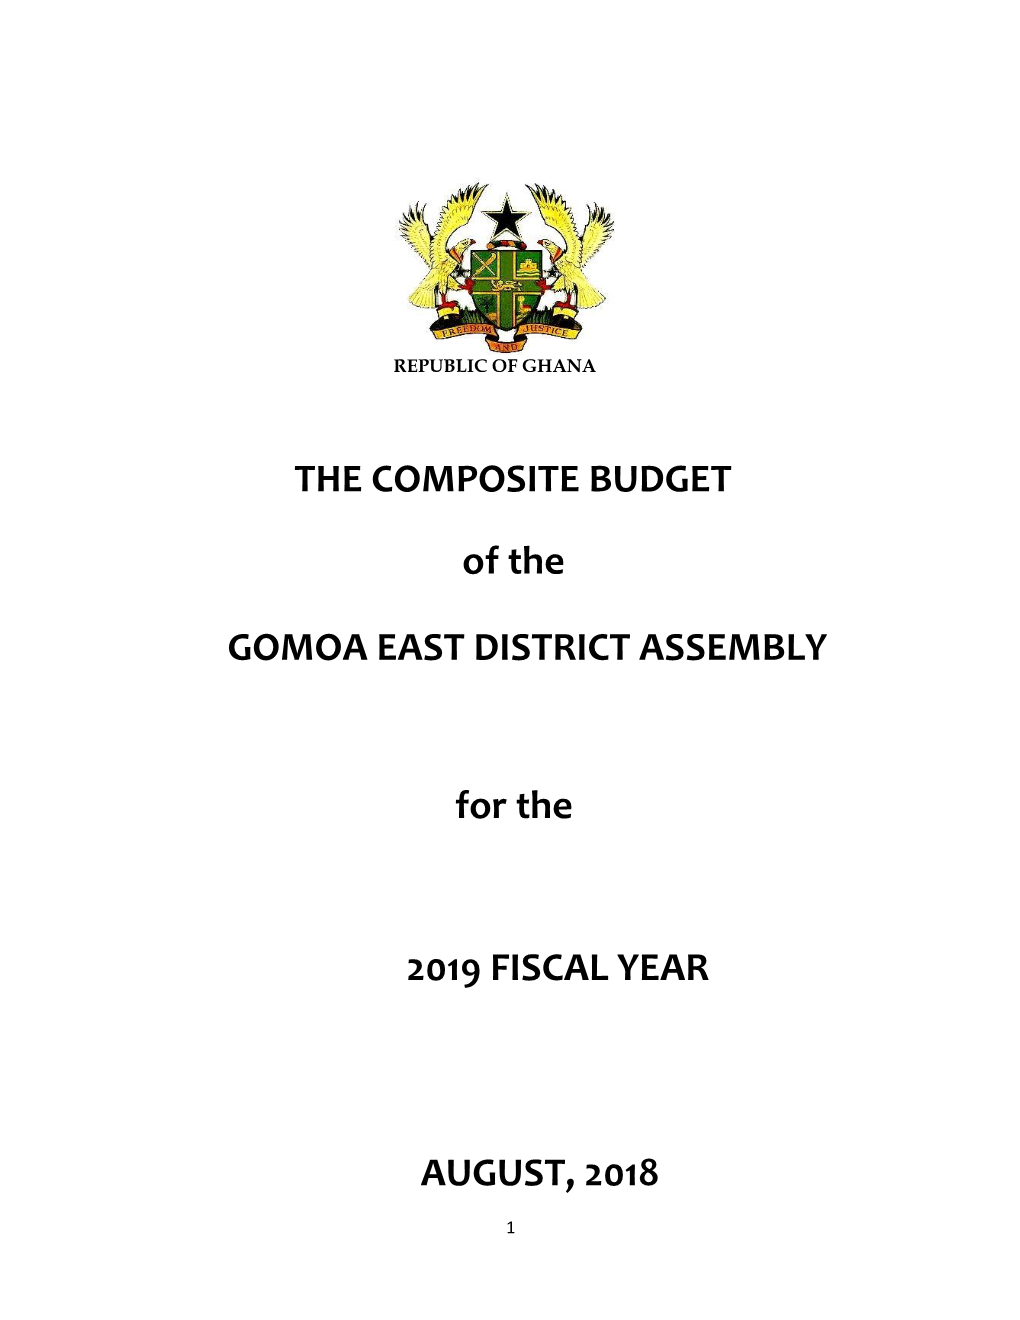 The Composite Budget